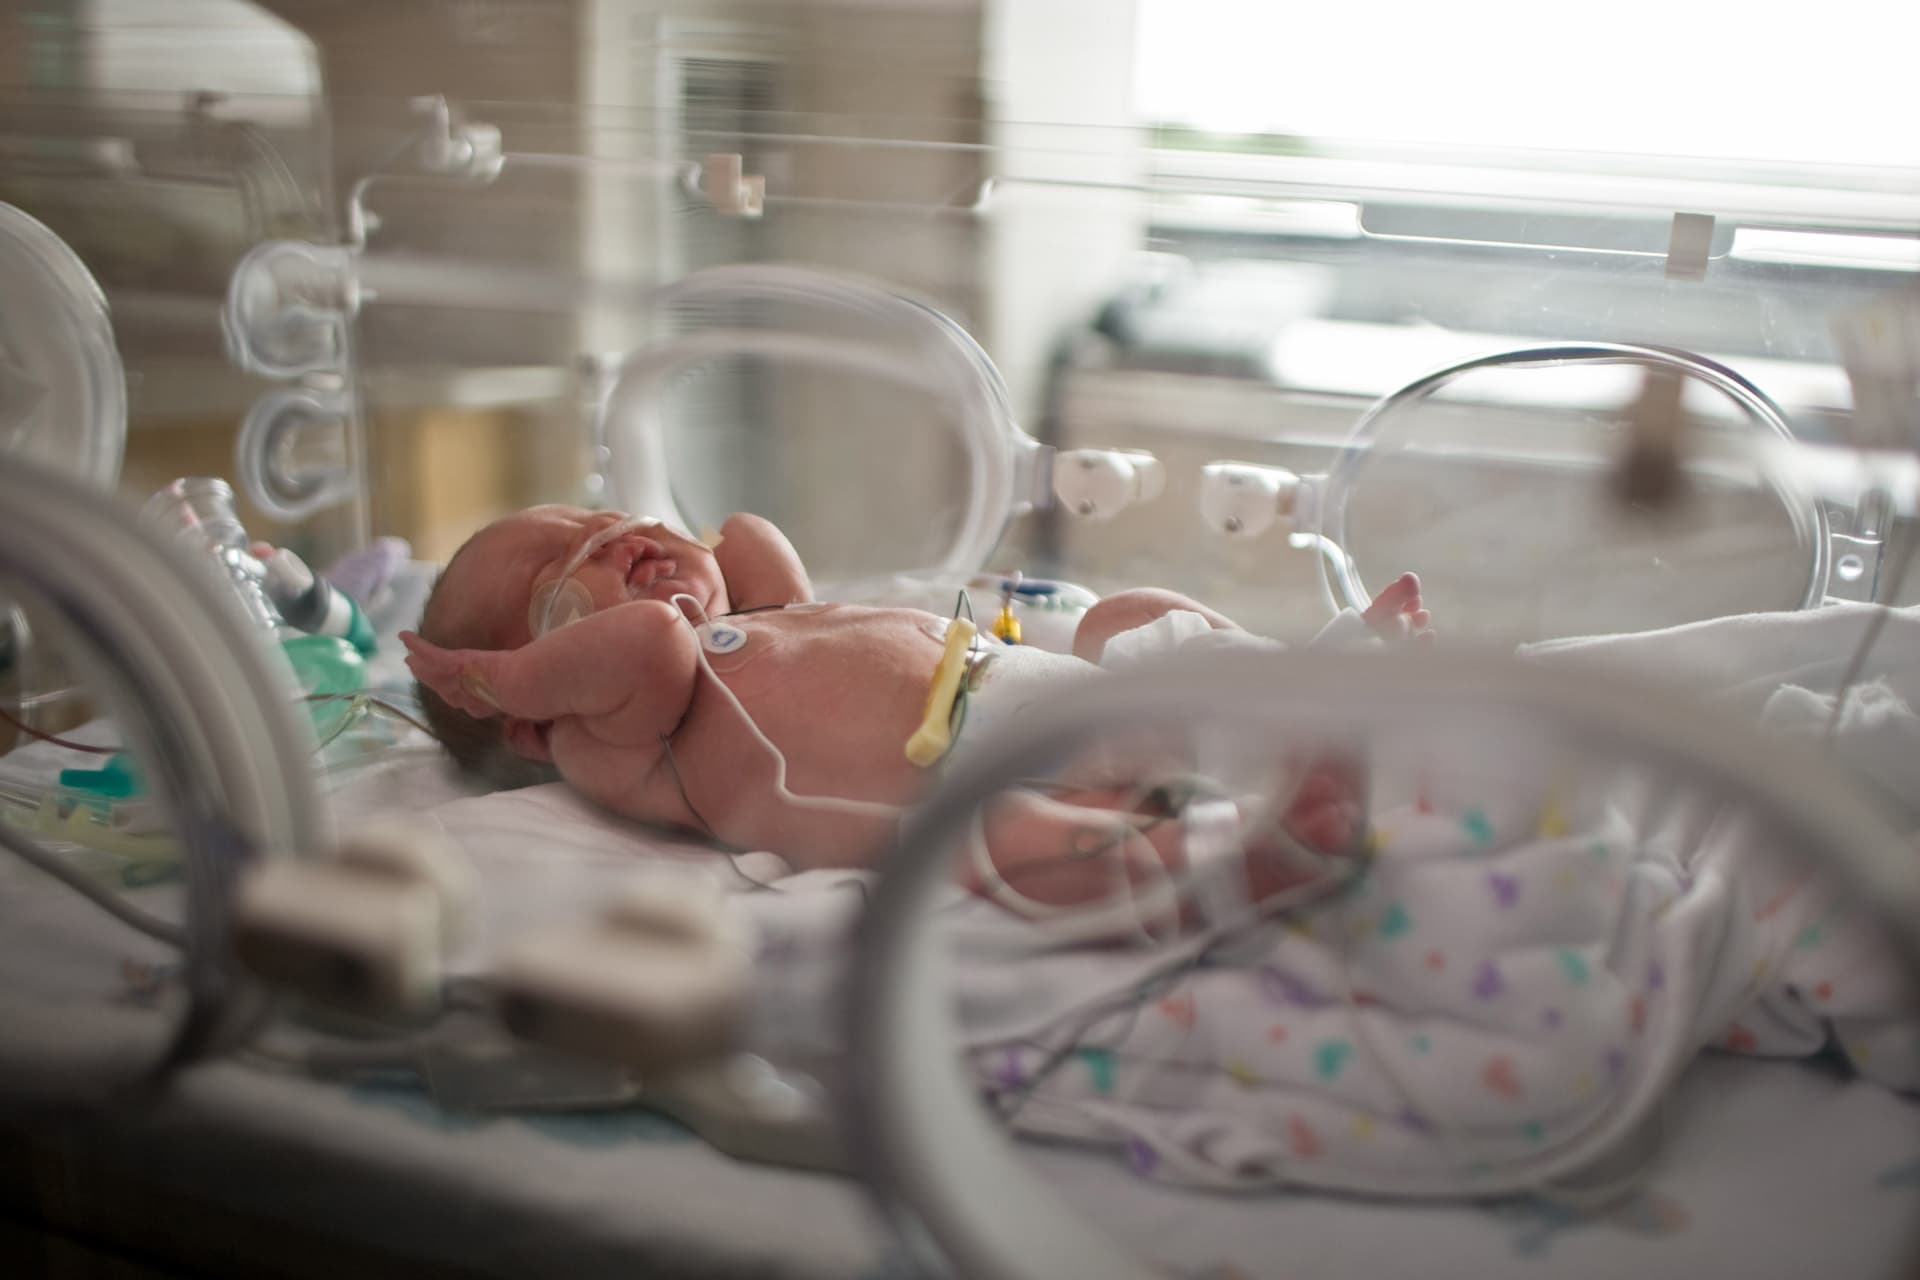 A baby in the Newborn Intensive Care Unit (NICU)